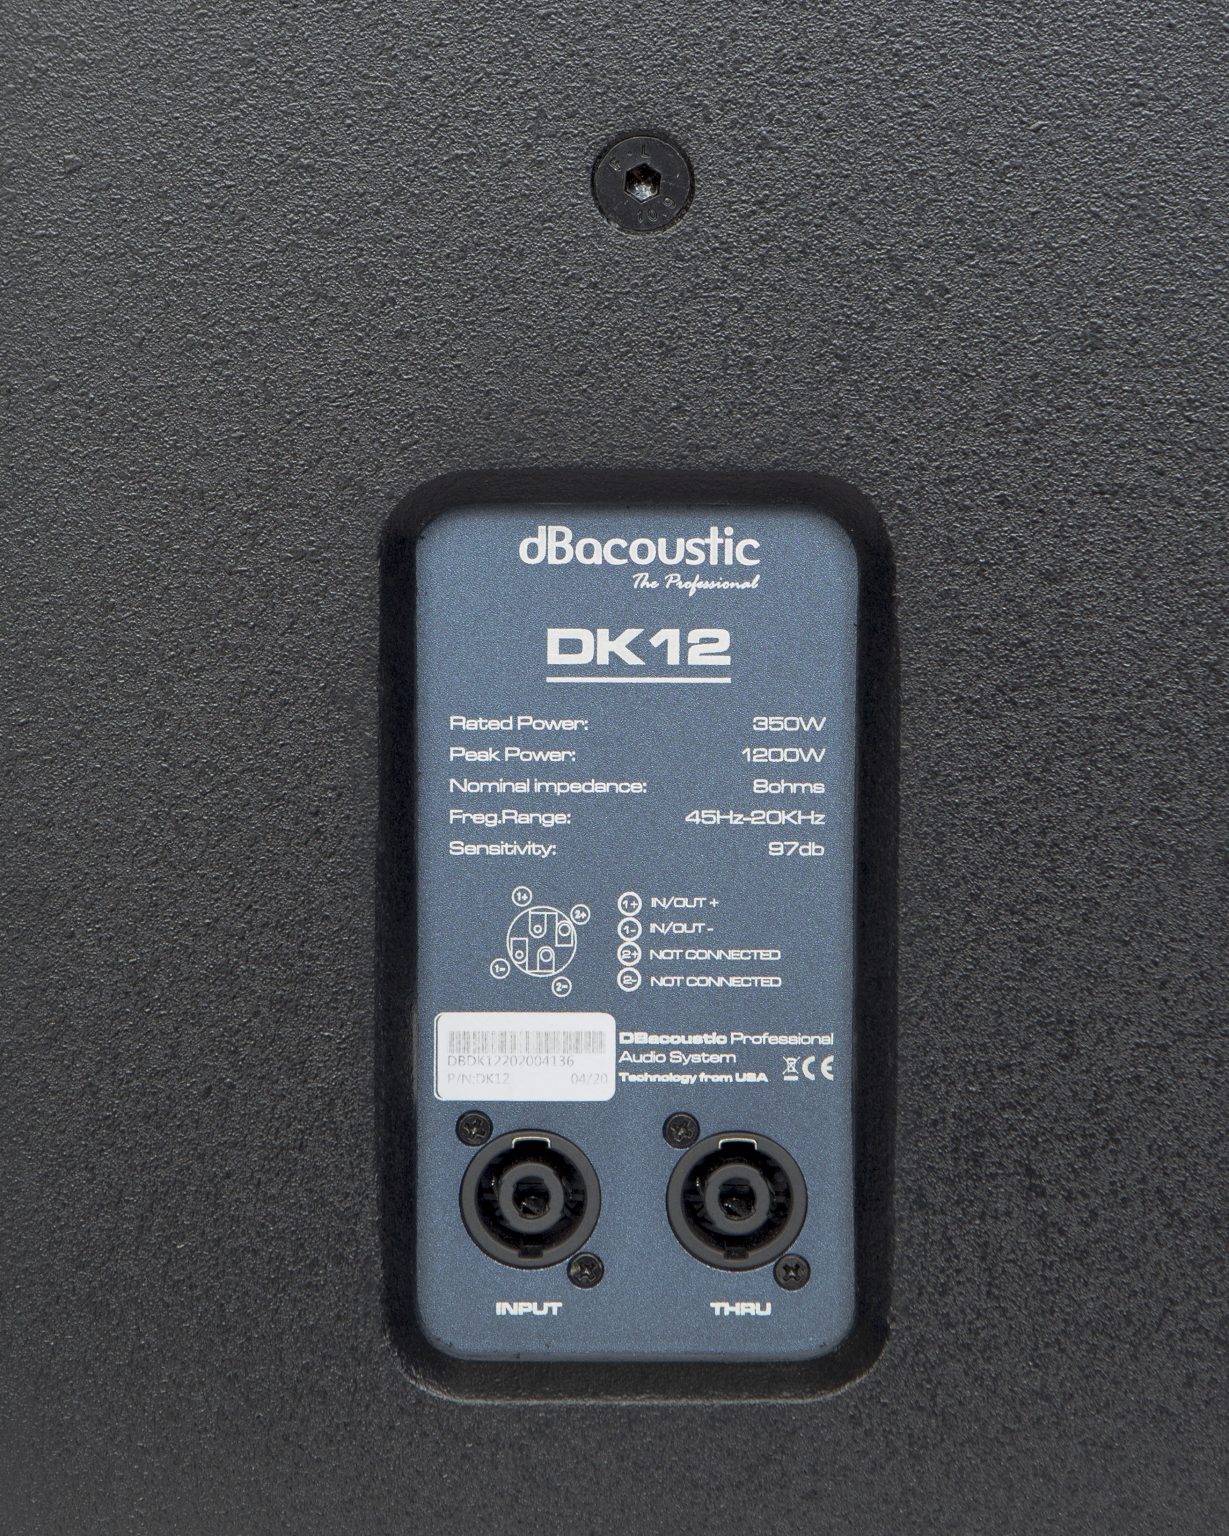 Loa Full dBacoustic DK12 - Hàng Chính Hãng (BASS 30CM + Công suất 350W) - Loa Karaoke chuyên nghiệp